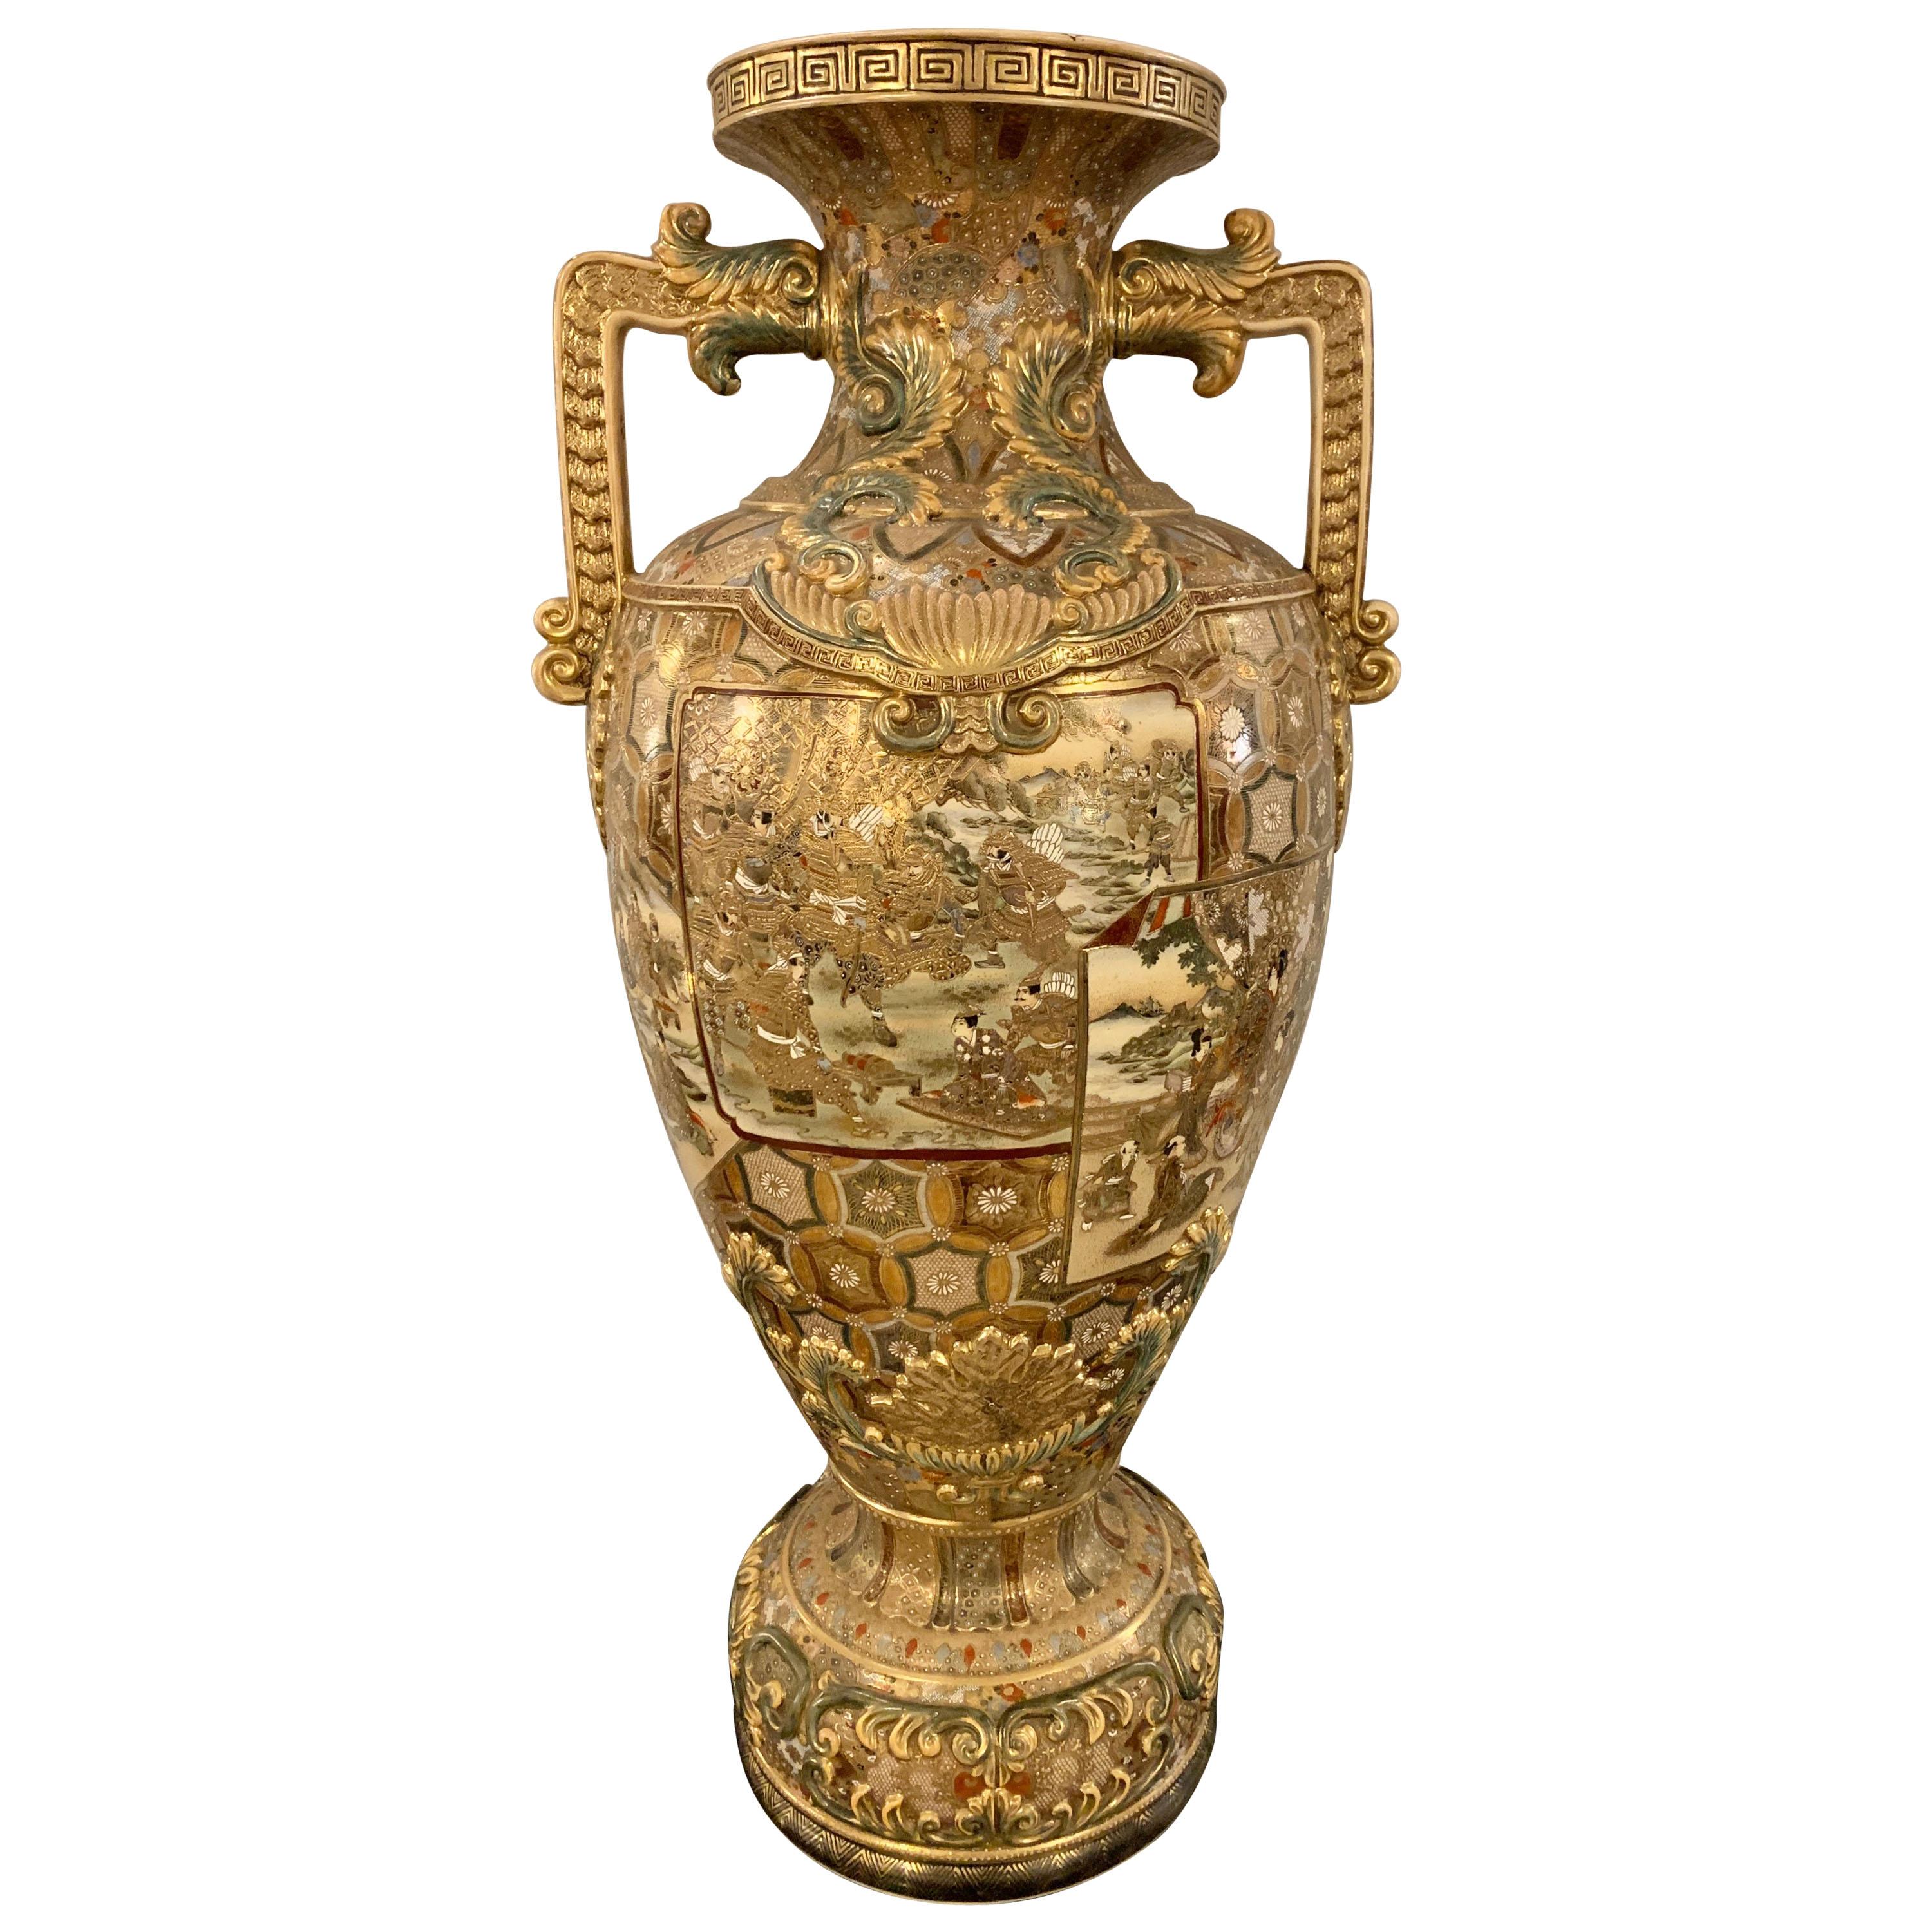 Satsuma Thousand Face Vase or Urn Palace Sized Twin Handled